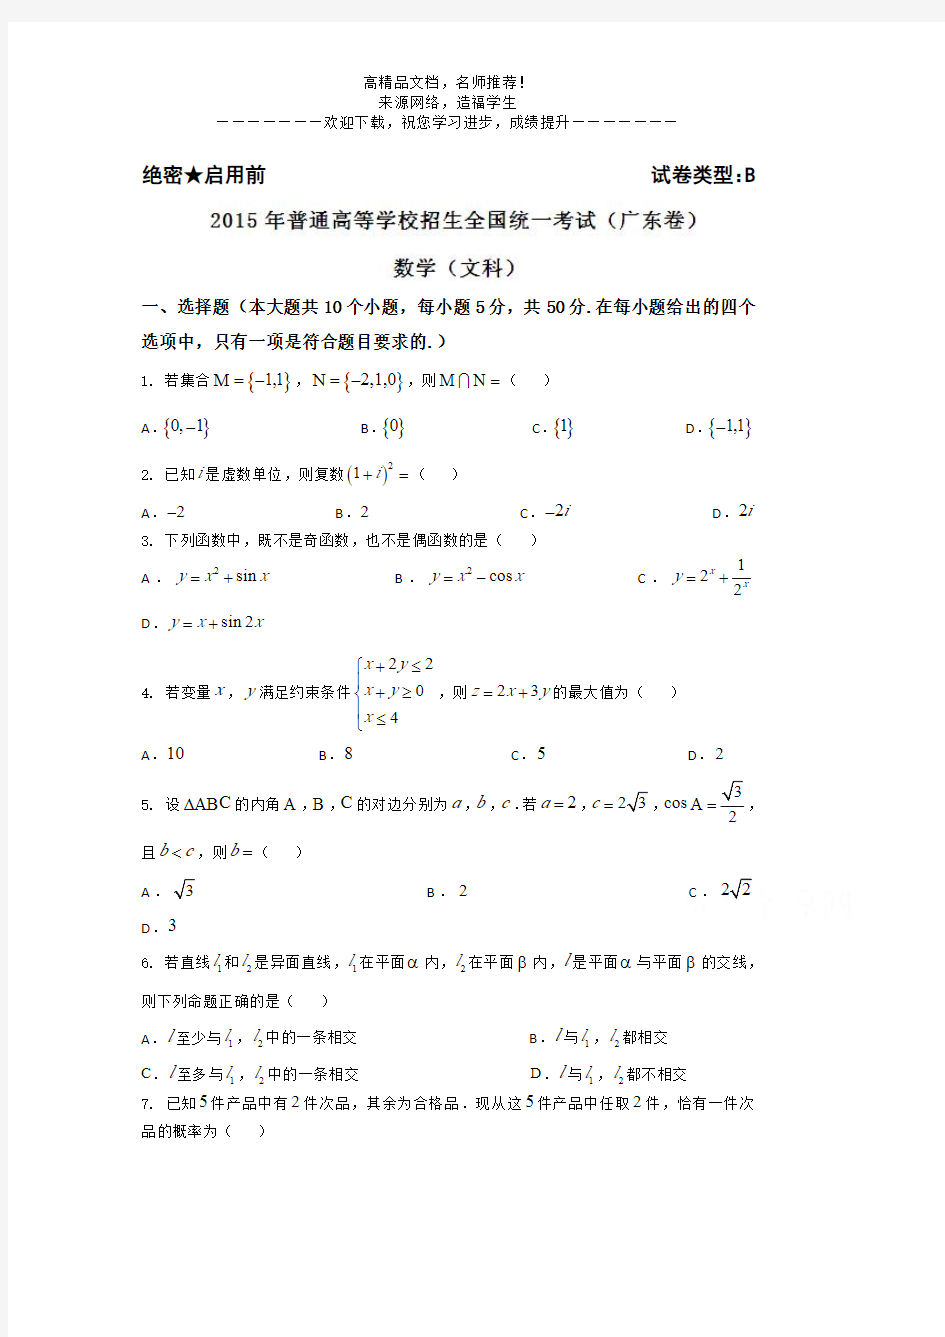 2015年高考真题——文科数学(广东卷)